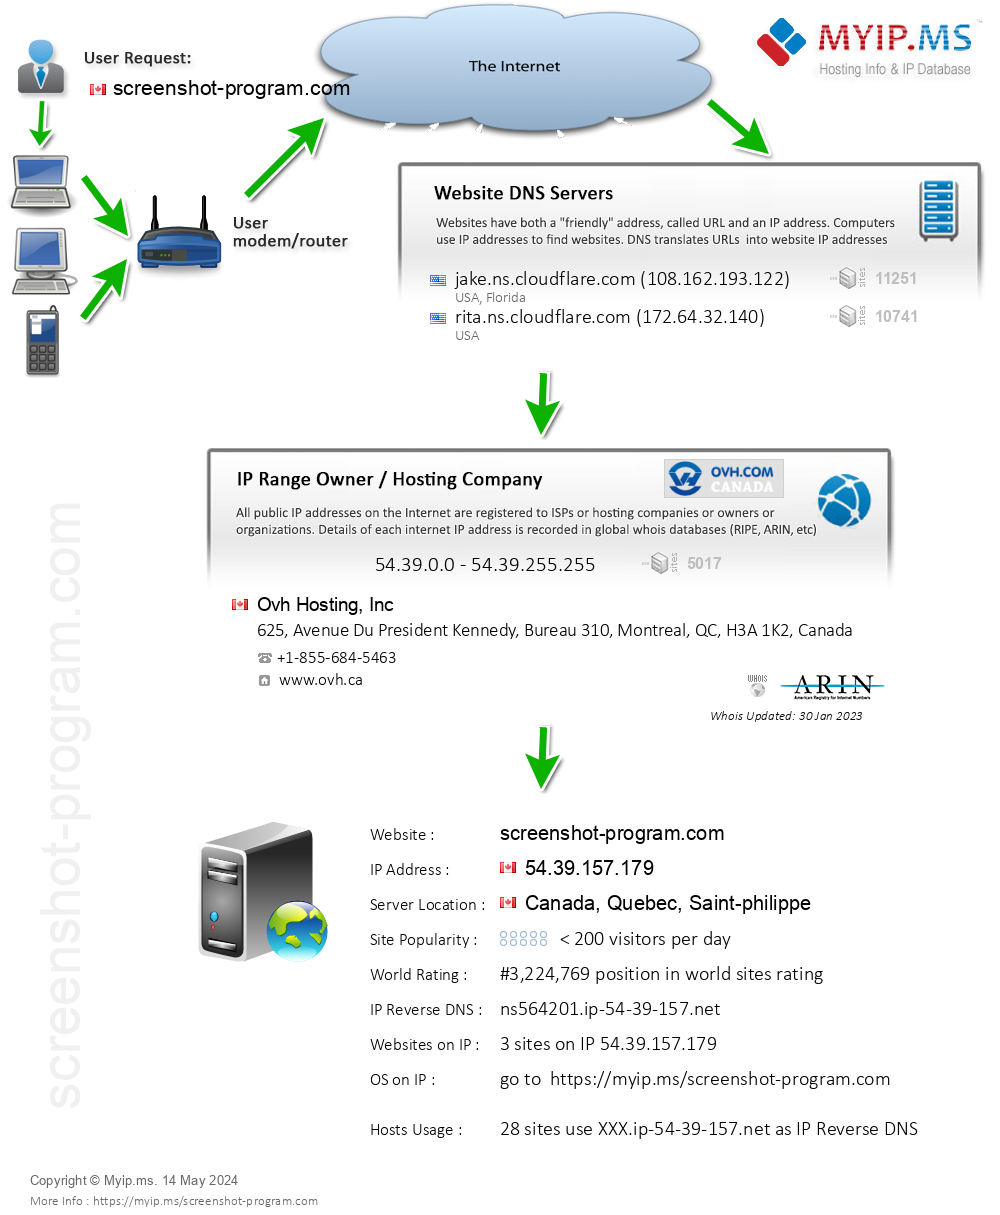 Screenshot-program.com - Website Hosting Visual IP Diagram